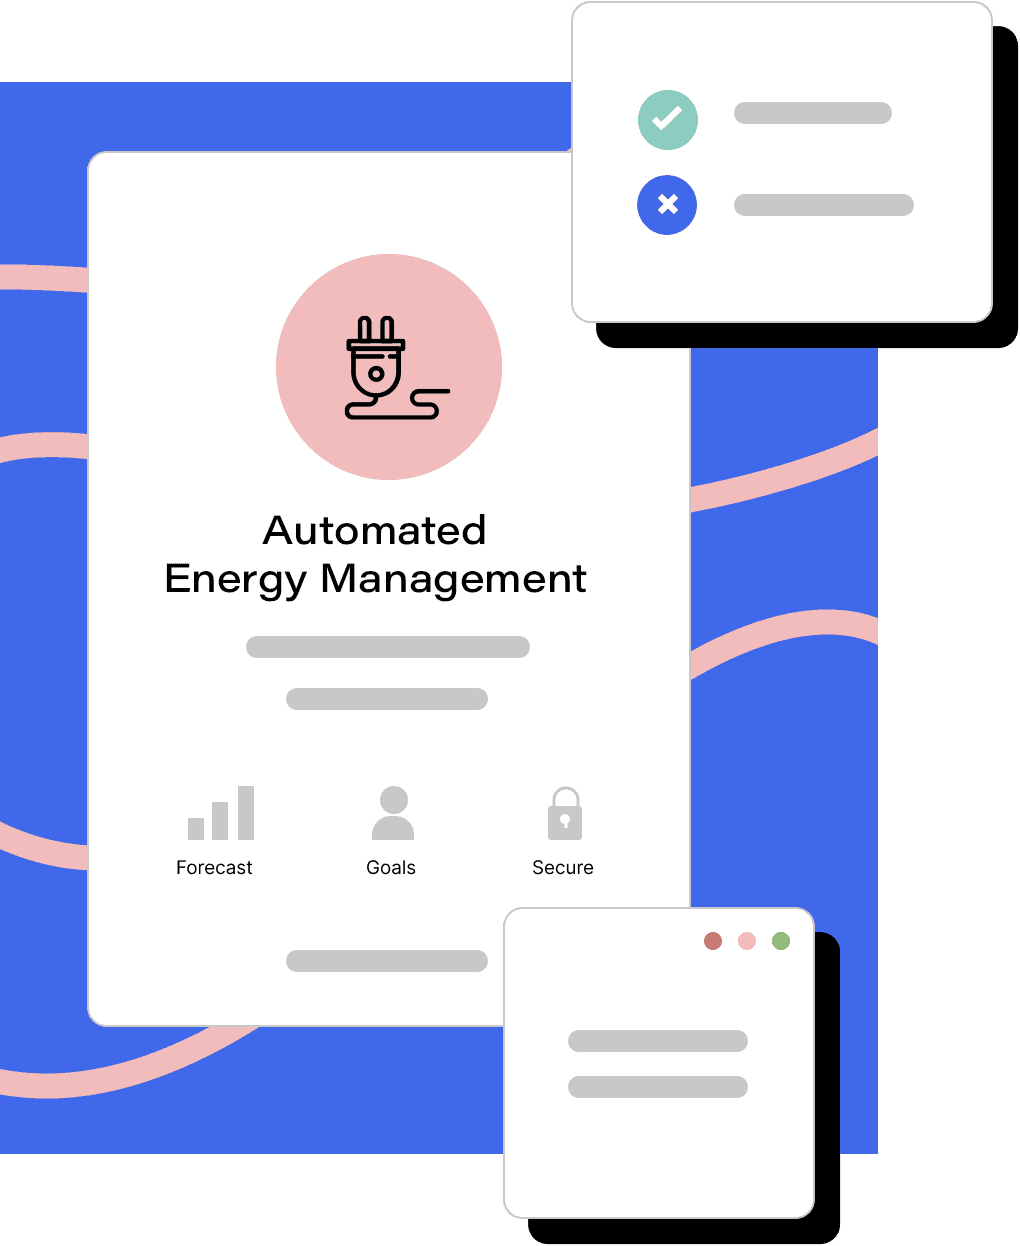 Automated Energy Management